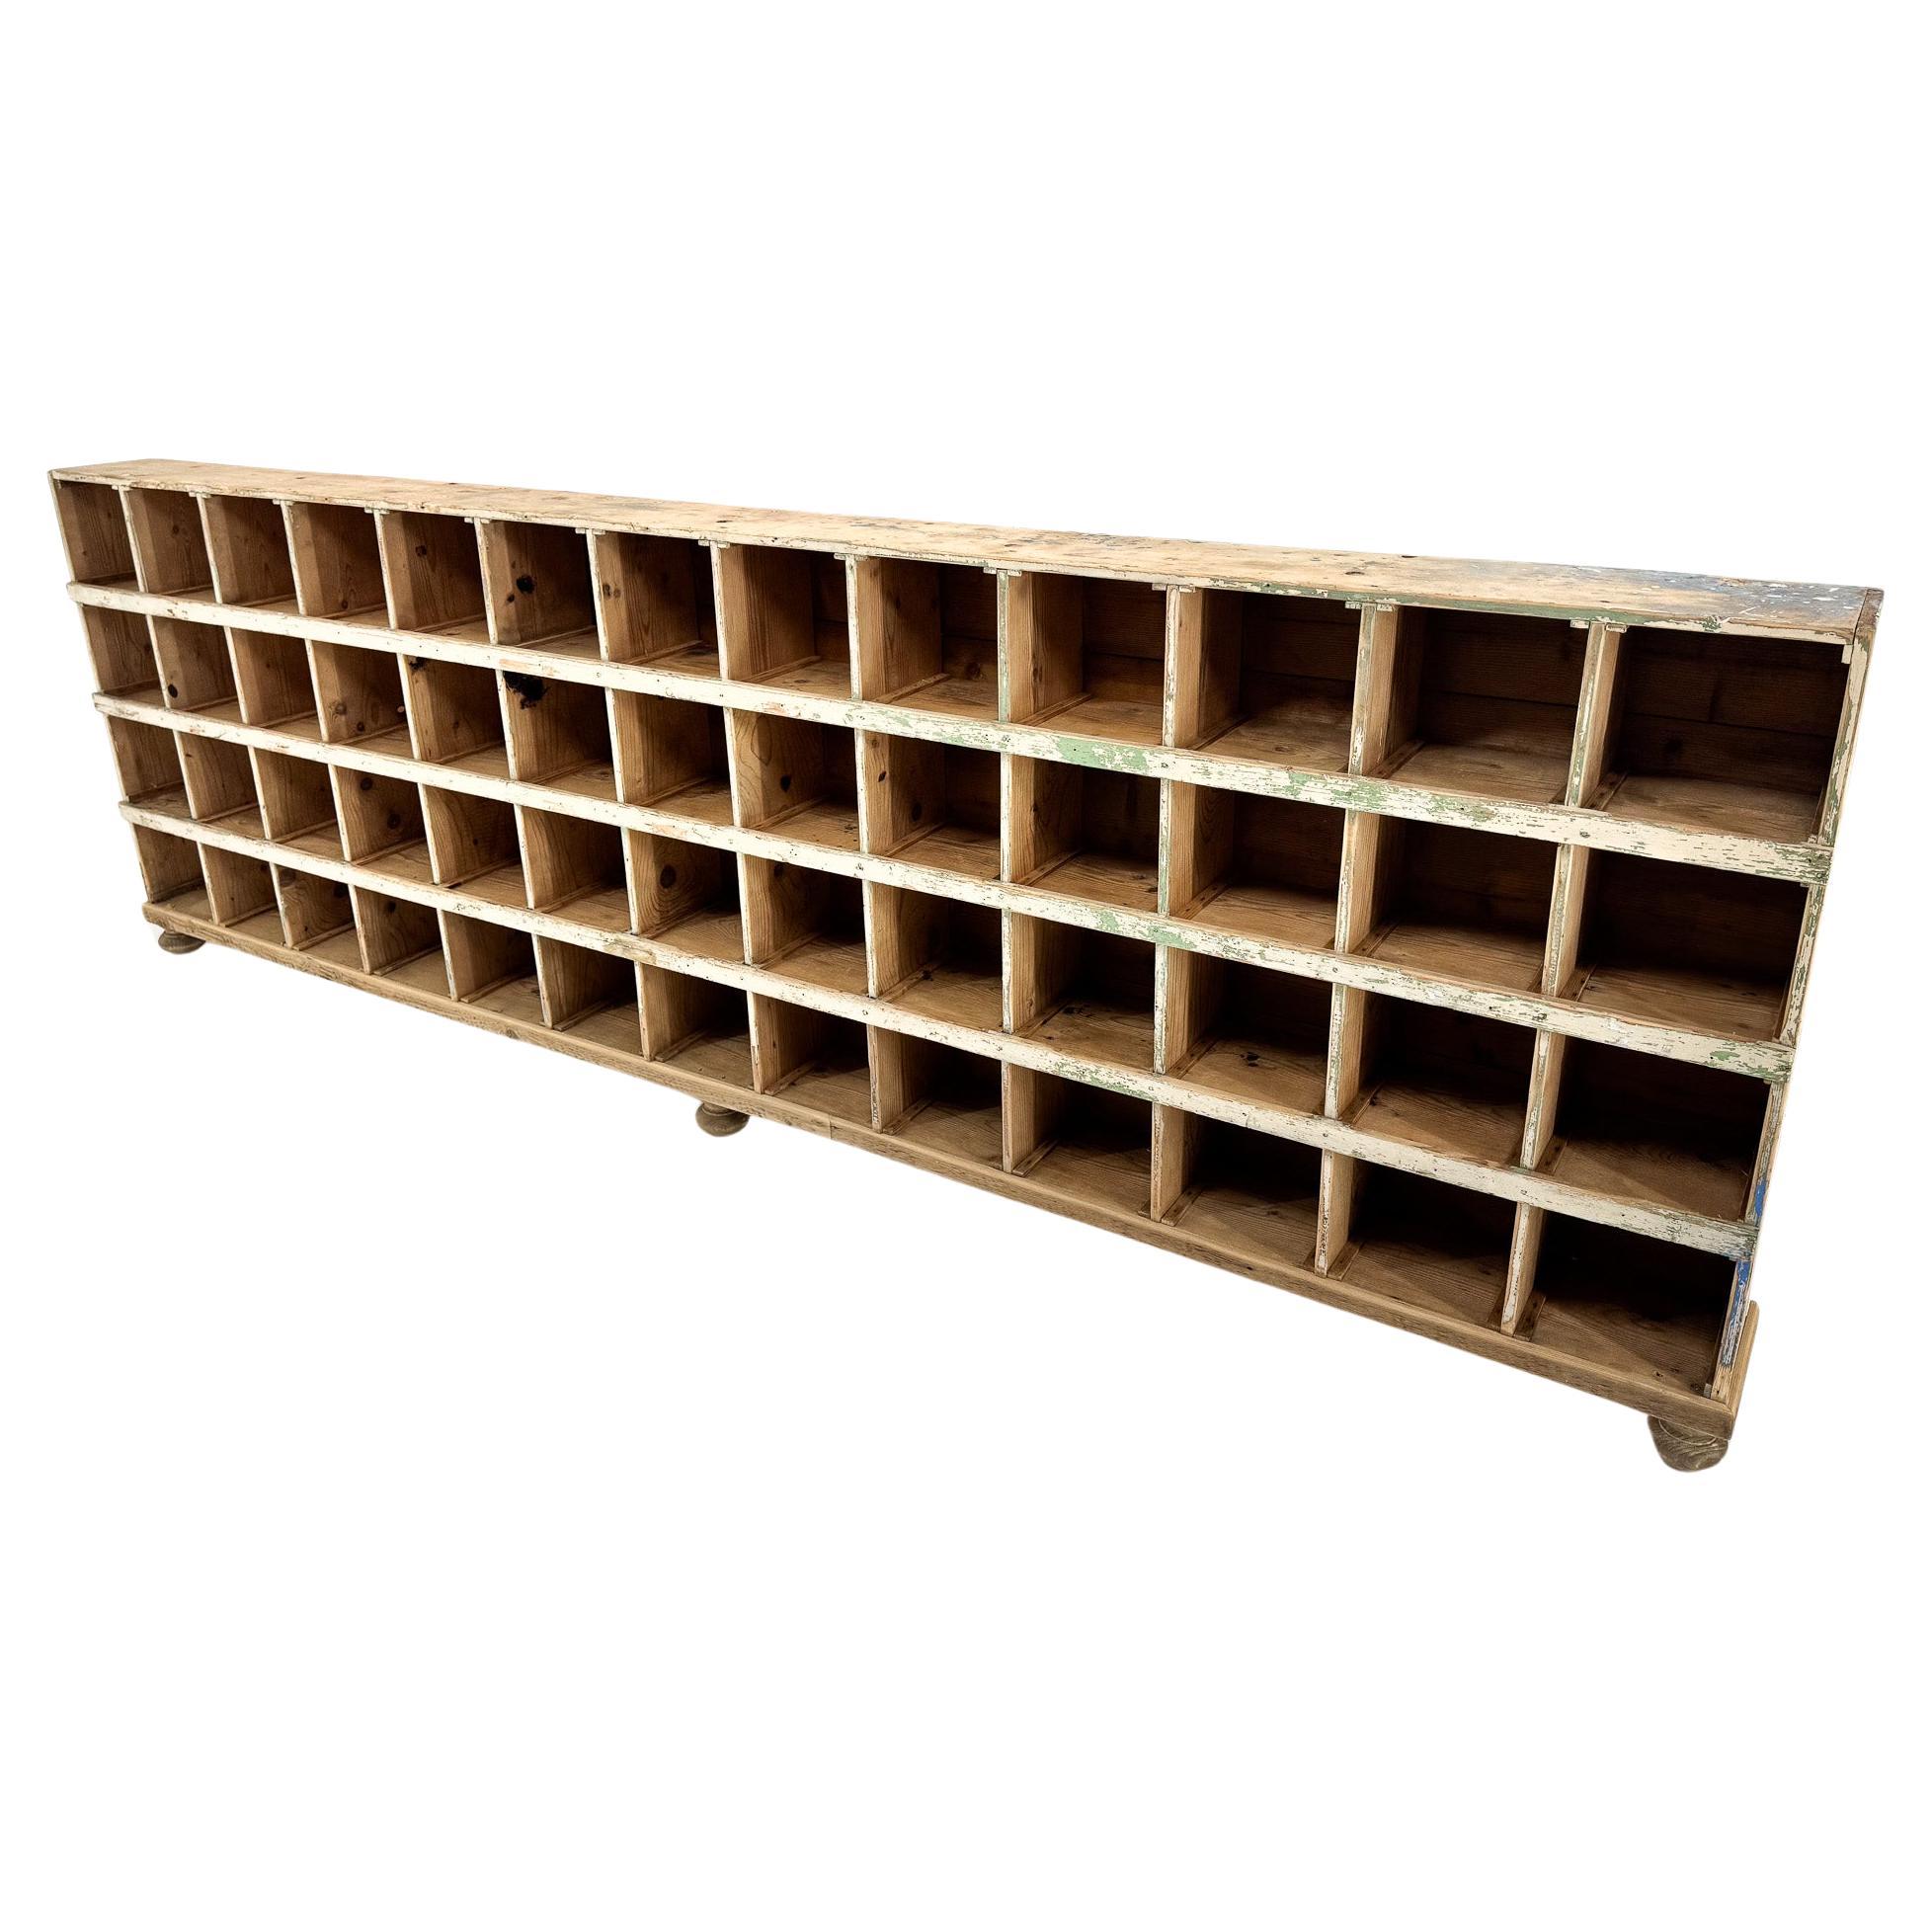 Vieille armoire industrielle entièrement en bois avec 52 compartiments